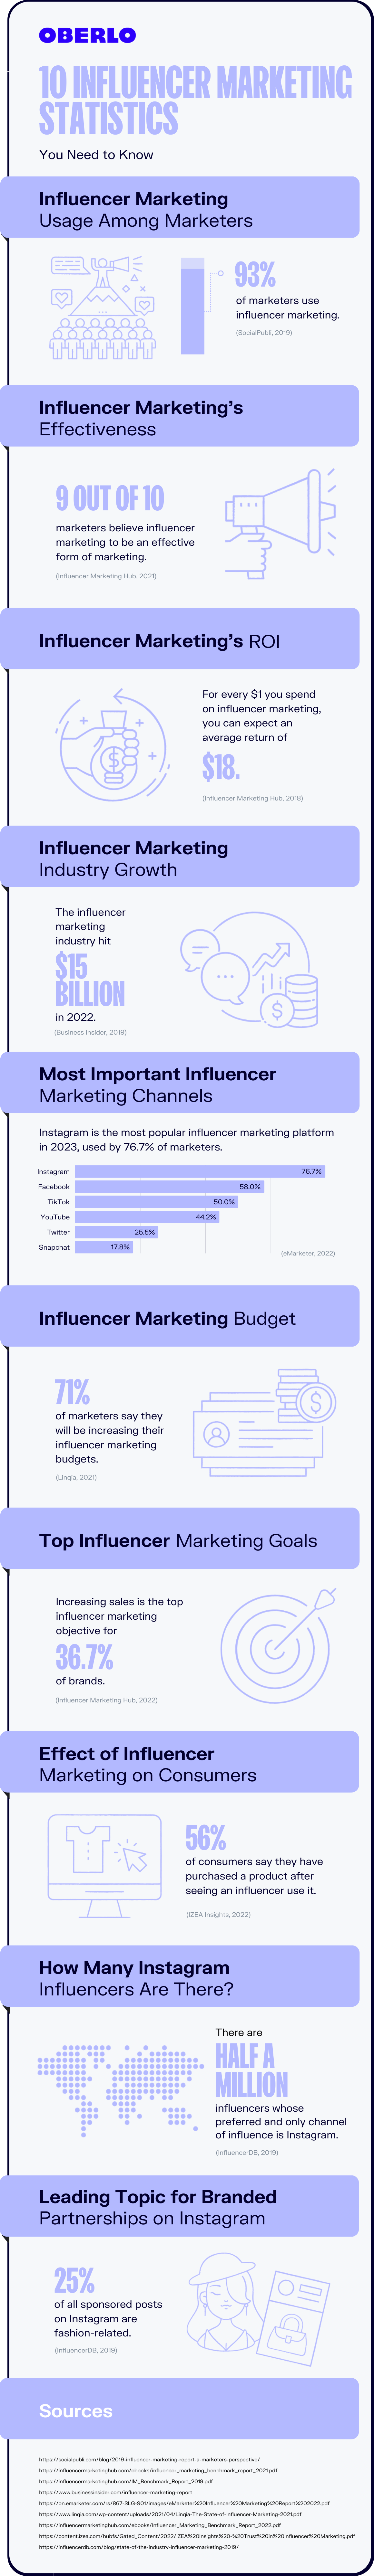 statistiques sur le marketing d'influence - infographie complète